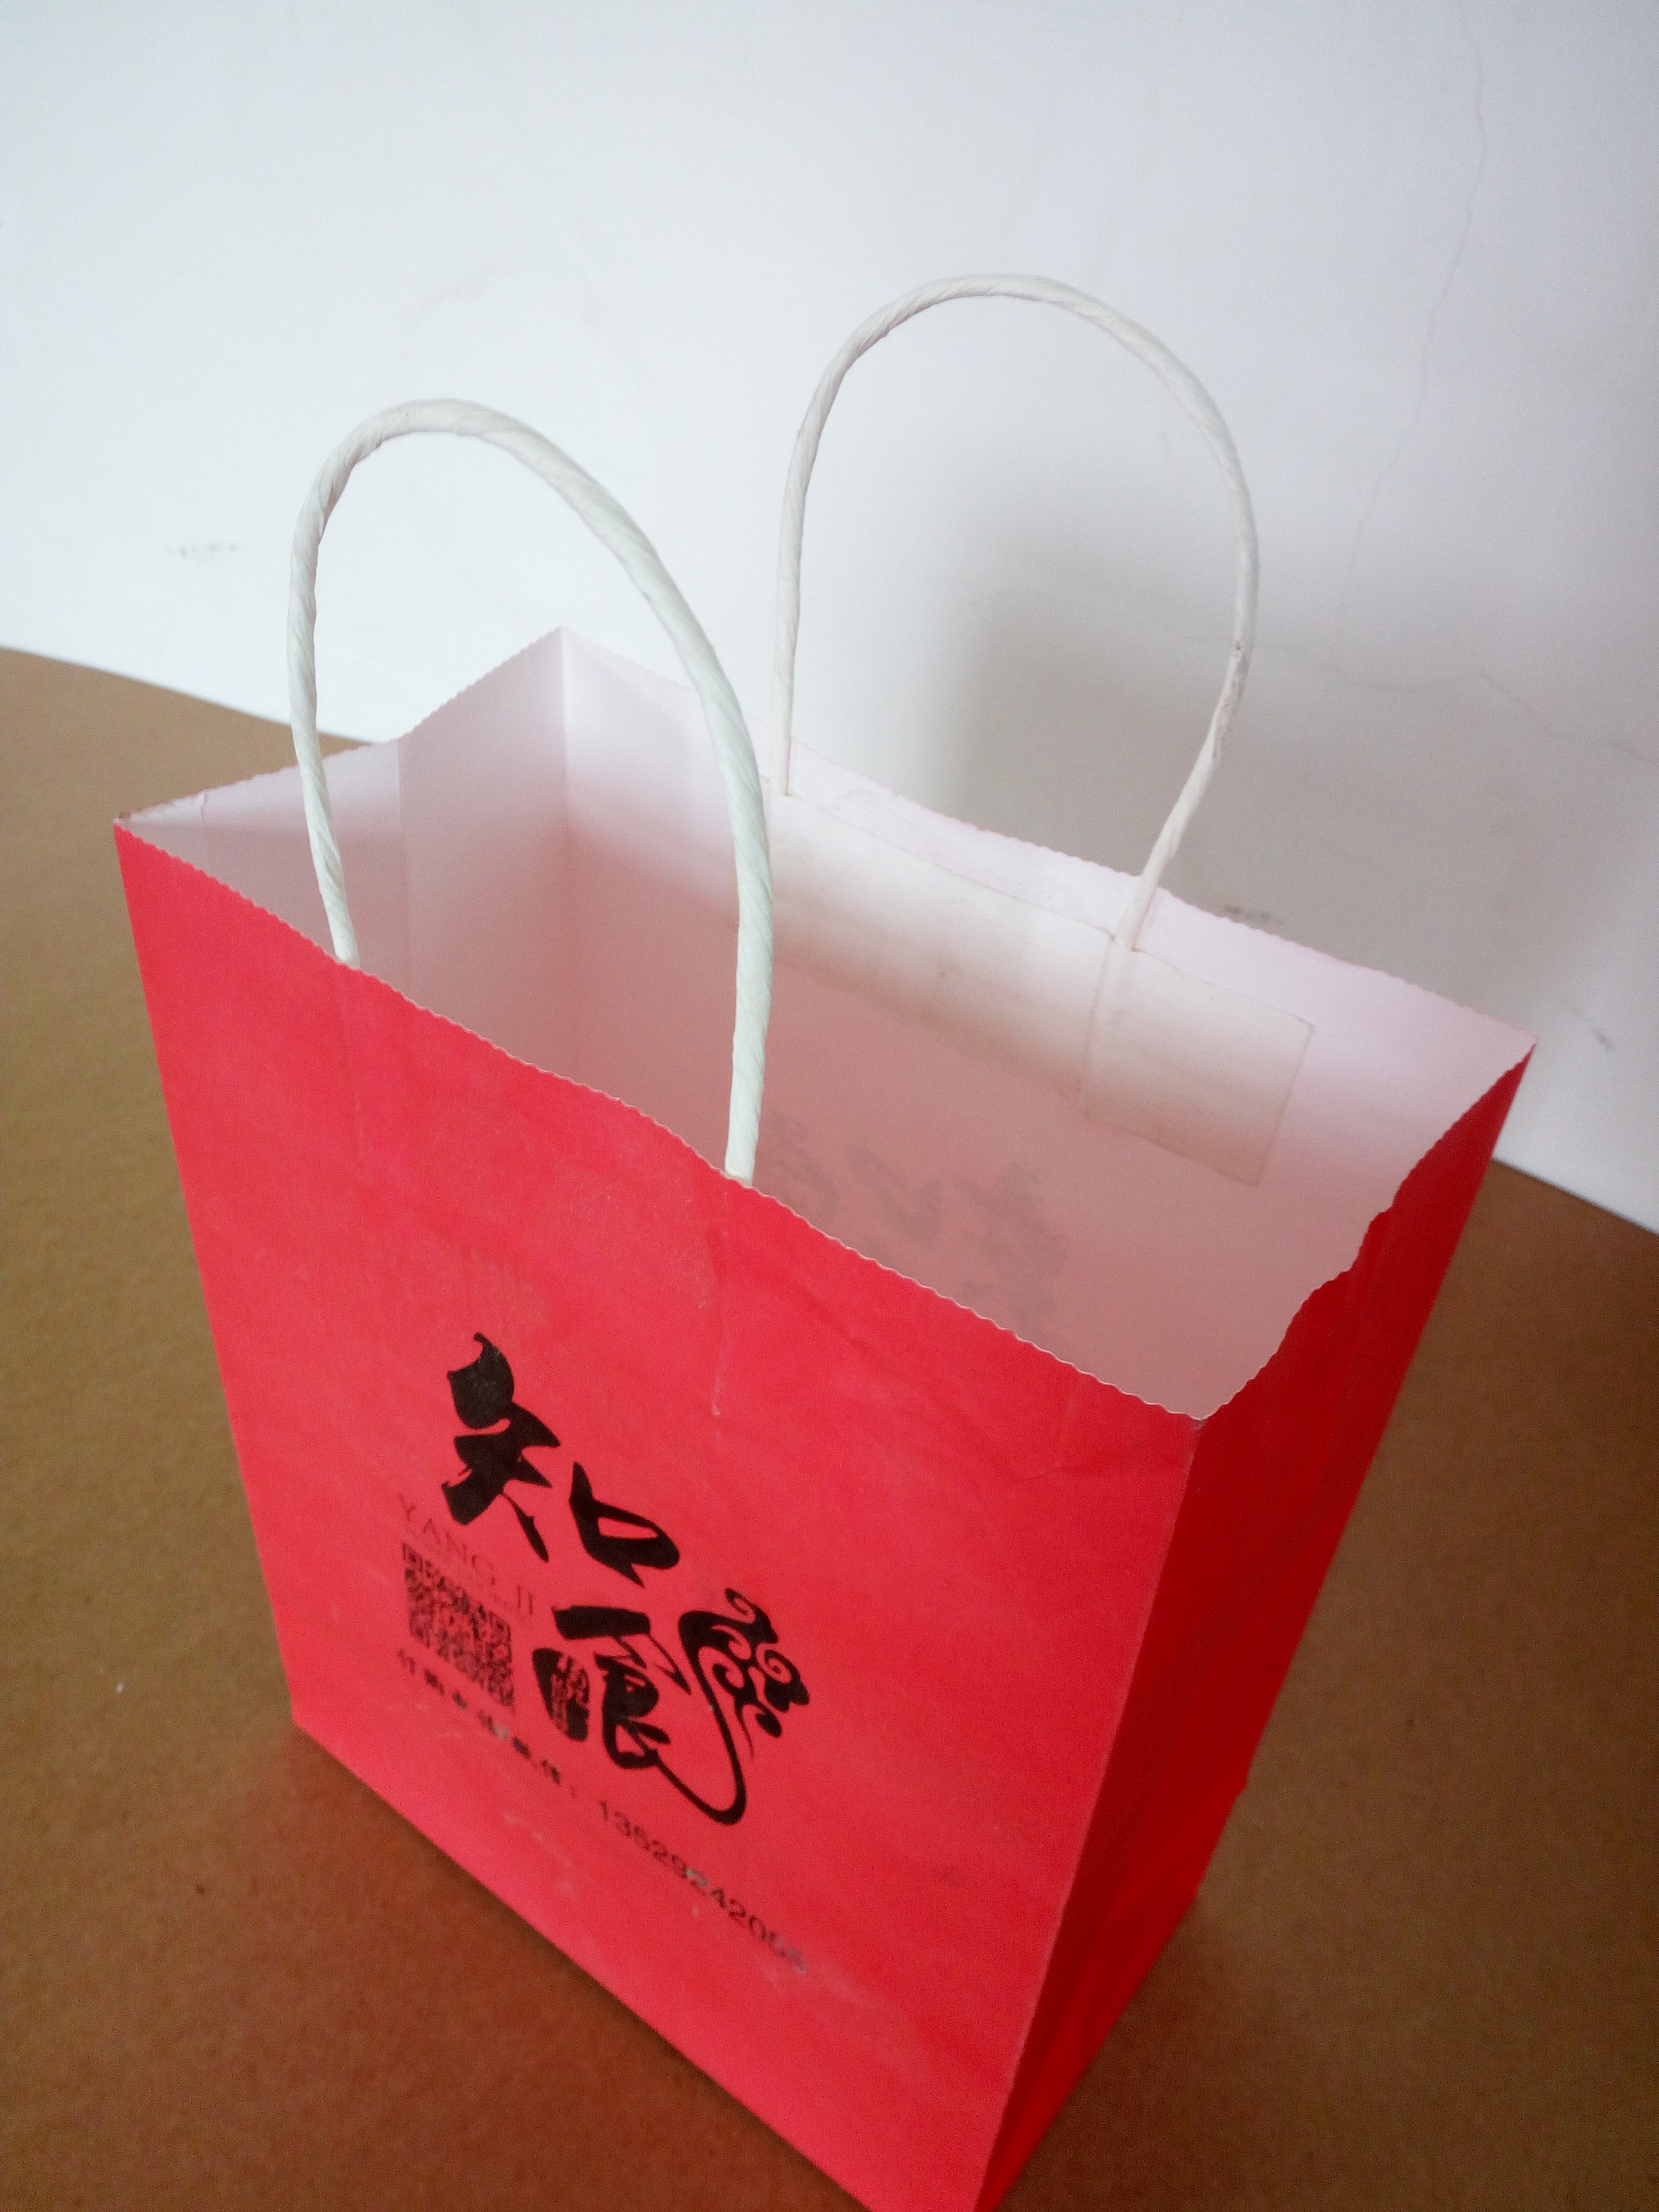 上海定制手提袋 手拎袋 手提纸盒 卡纸包袋 服装手袋 上海手提袋订制 白牛皮手提袋图片